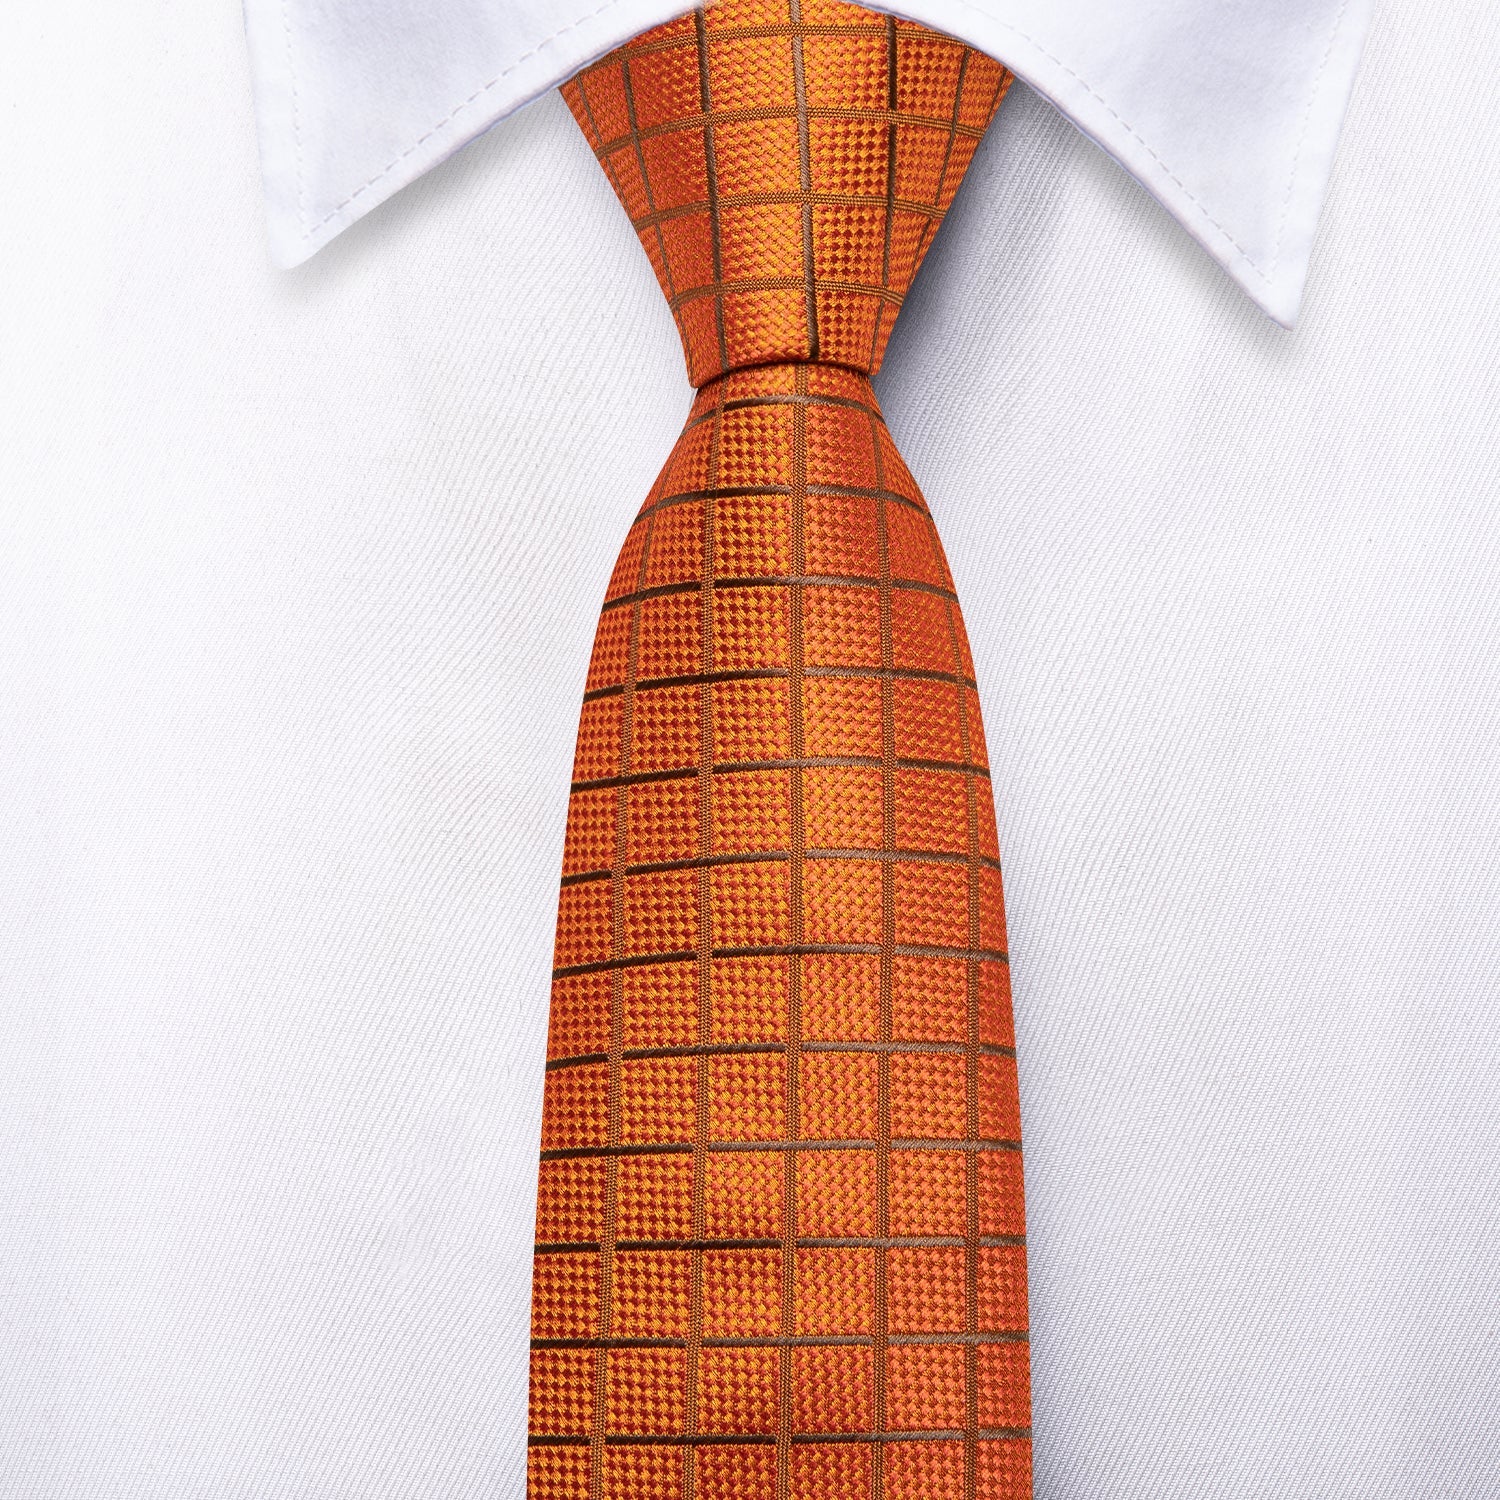 Hi-Tie Orange Tie Plaid Silk Men's Necktie Pocket Square Cufflinks Set